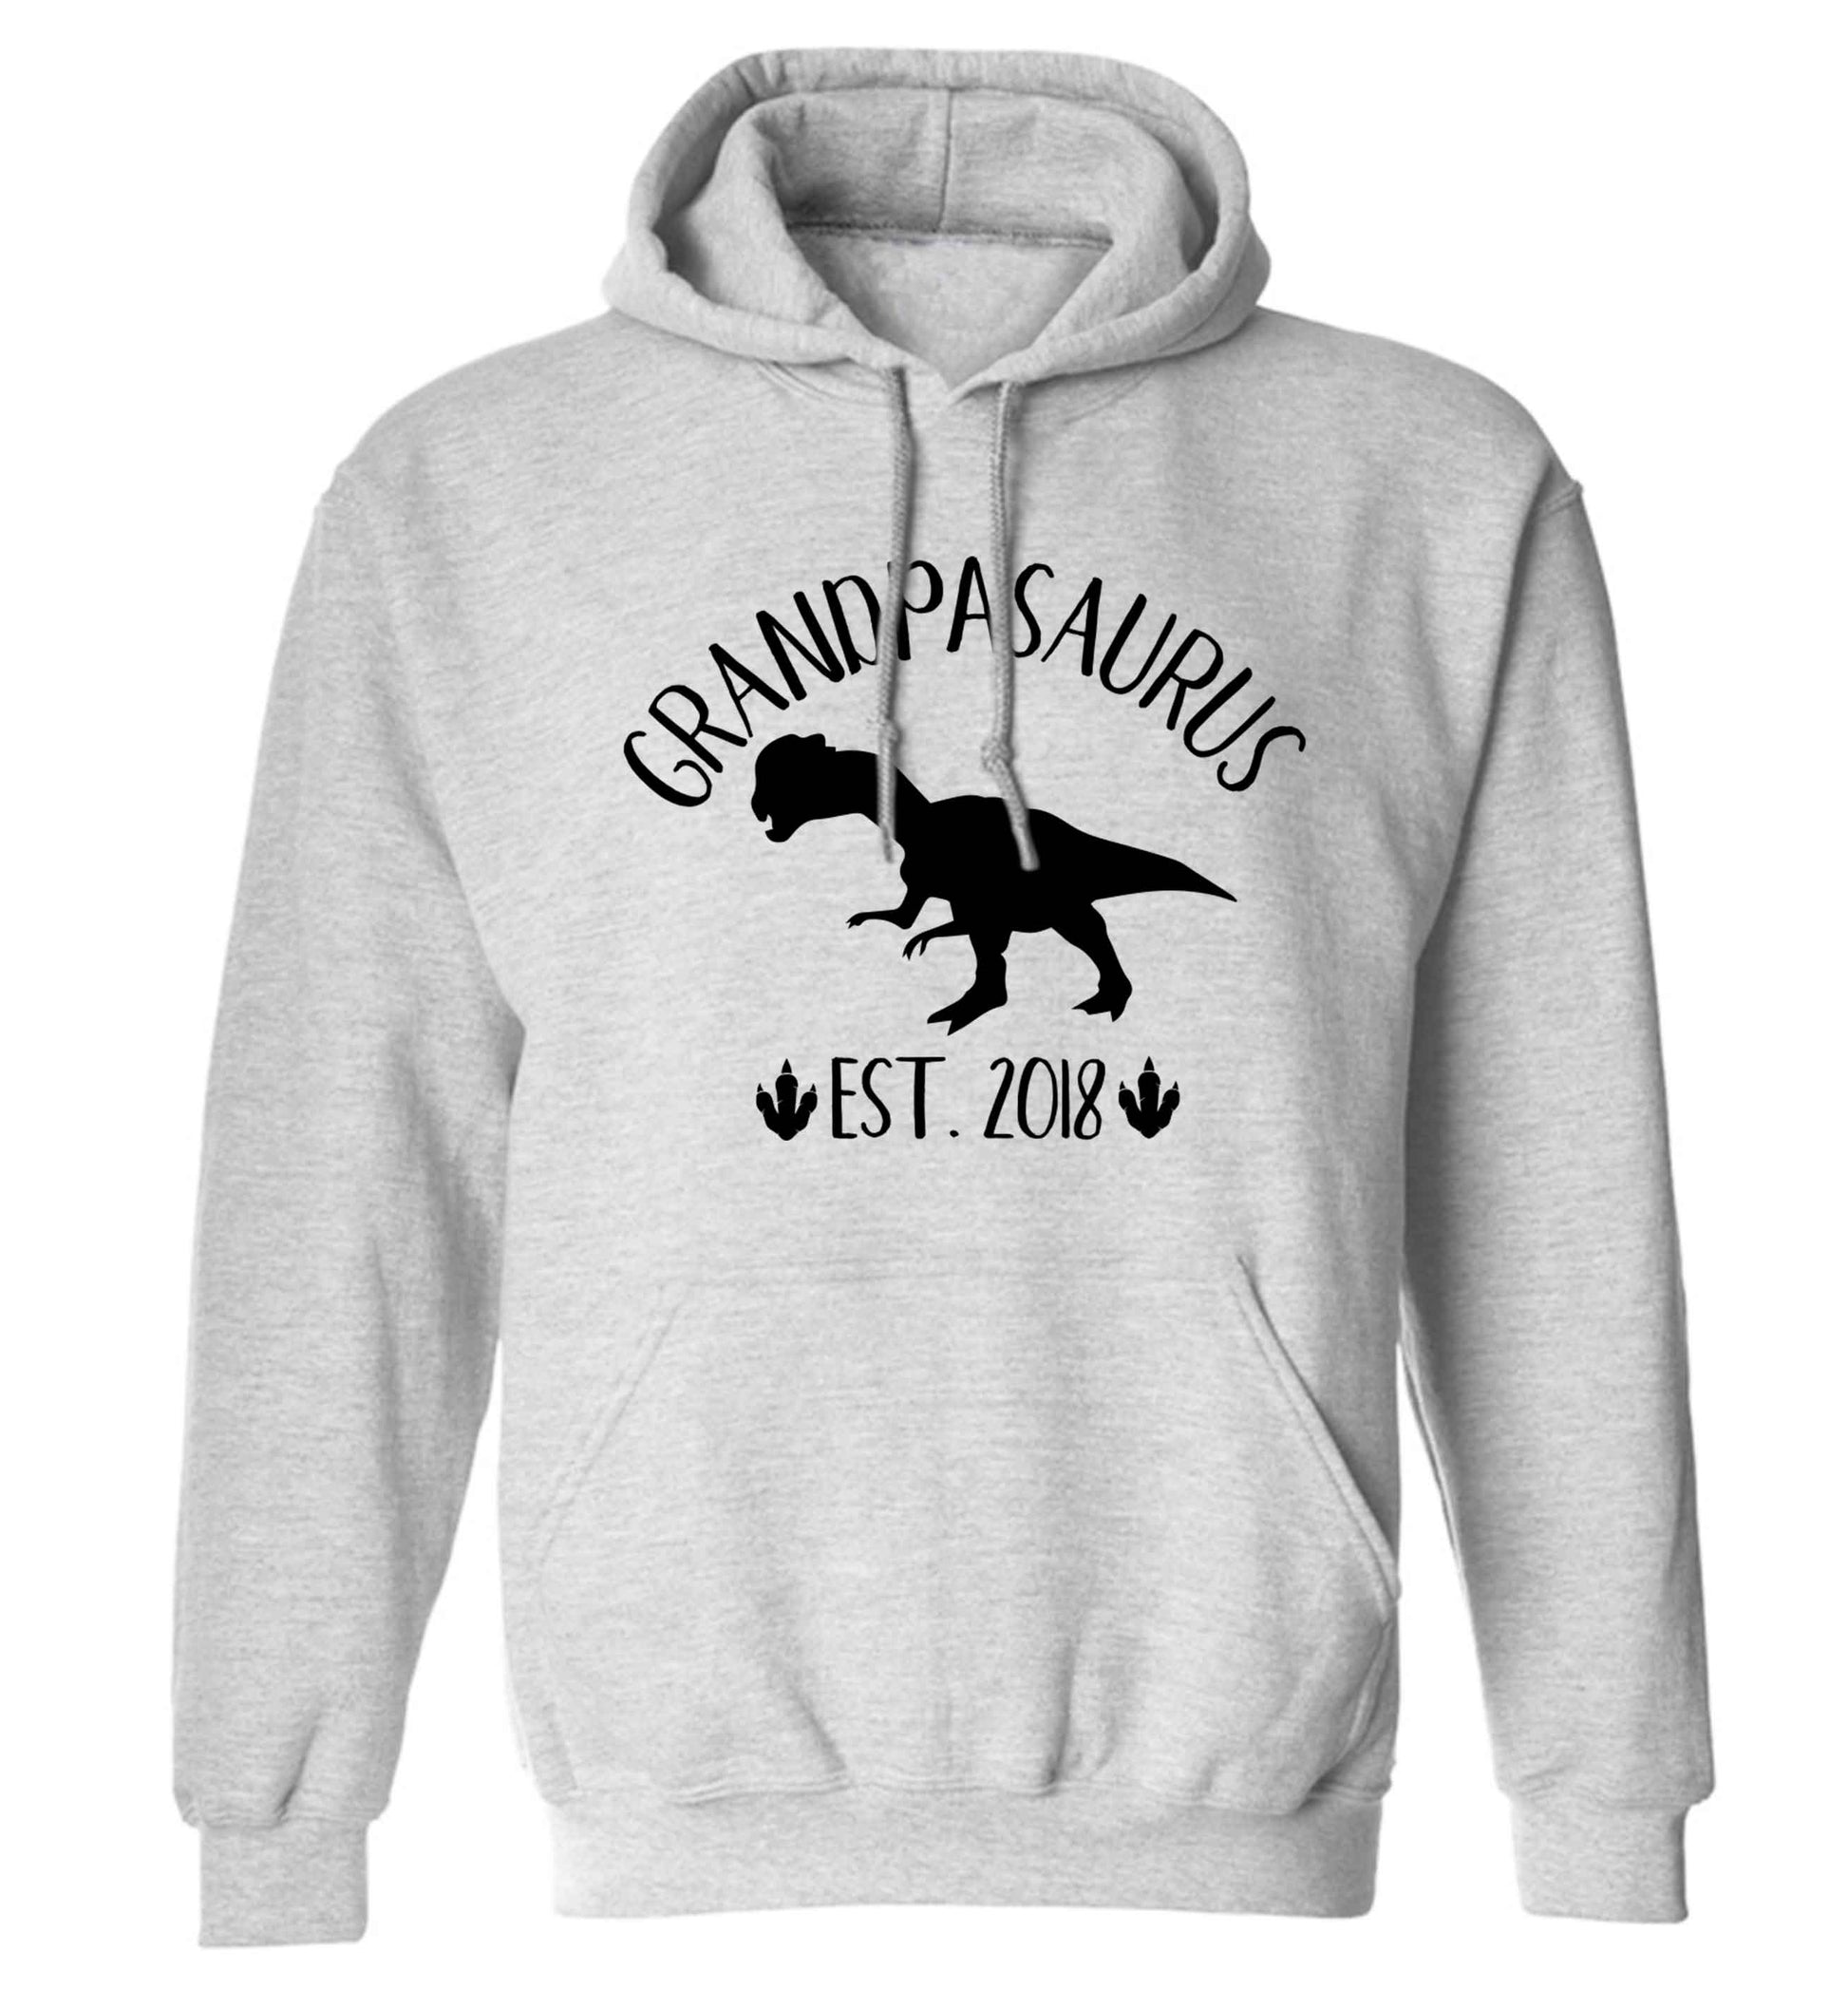 Personalised grandpasaurus since (custom date) adults unisex grey hoodie 2XL